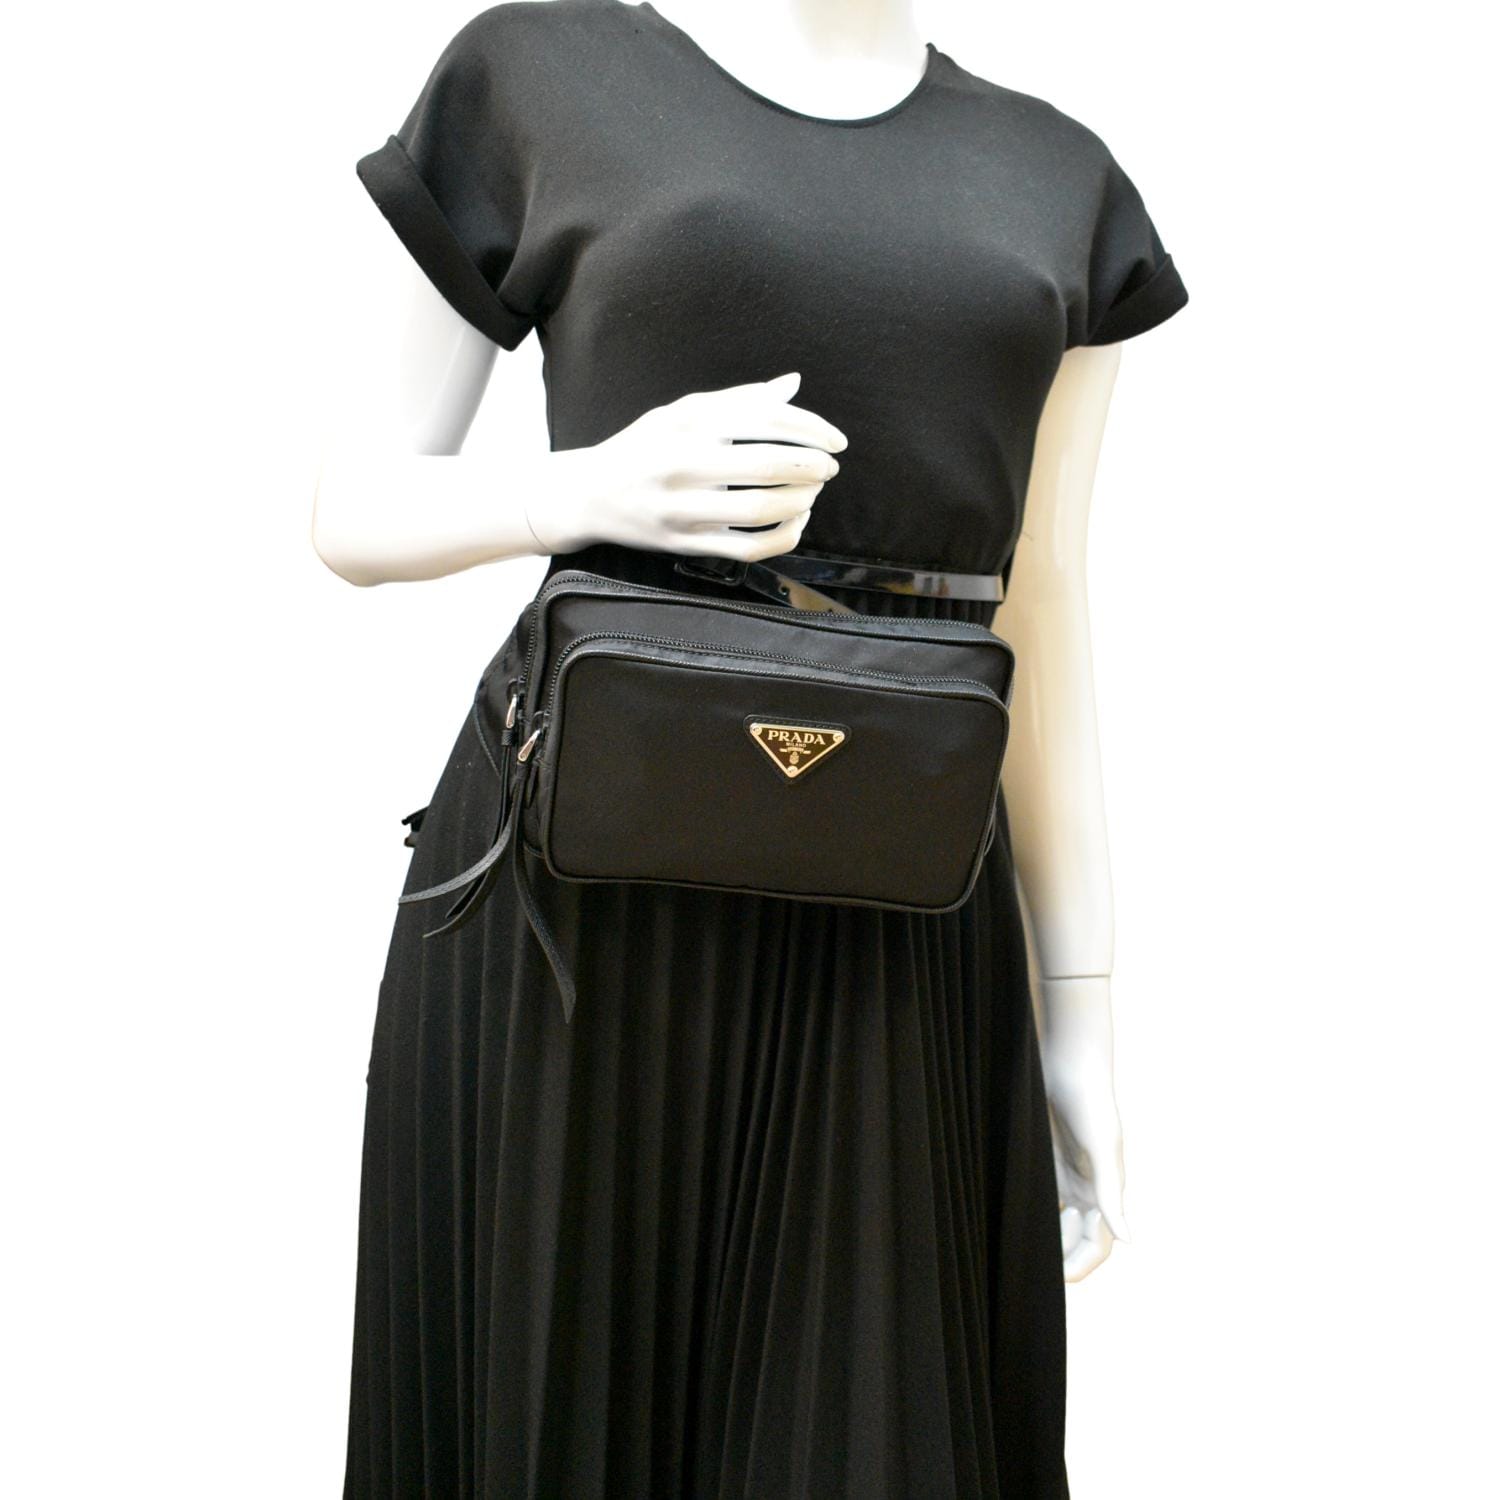 Prada Saffiano Lux Waist Bag - Black Waist Bags, Handbags